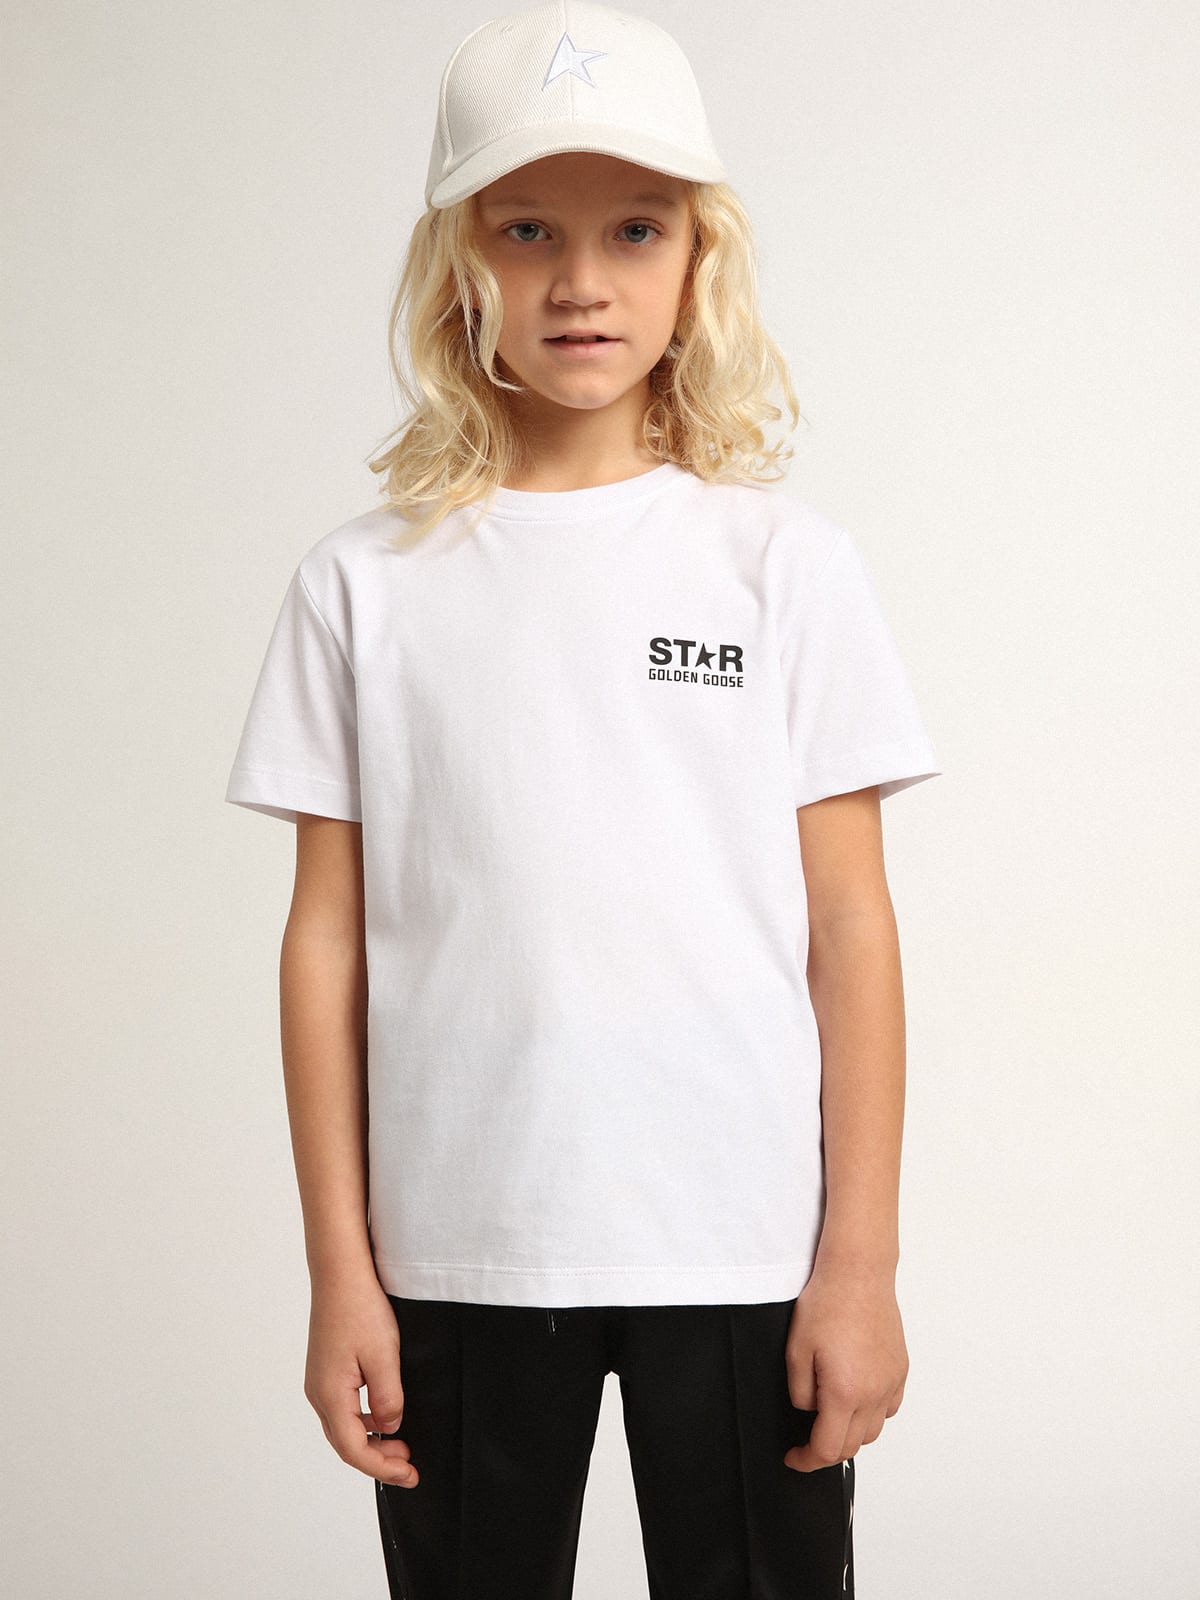 Golden Goose - Weißes T-Shirt aus der Star Collection mit Logo und Stern in kontrastierendem Schwarz in 